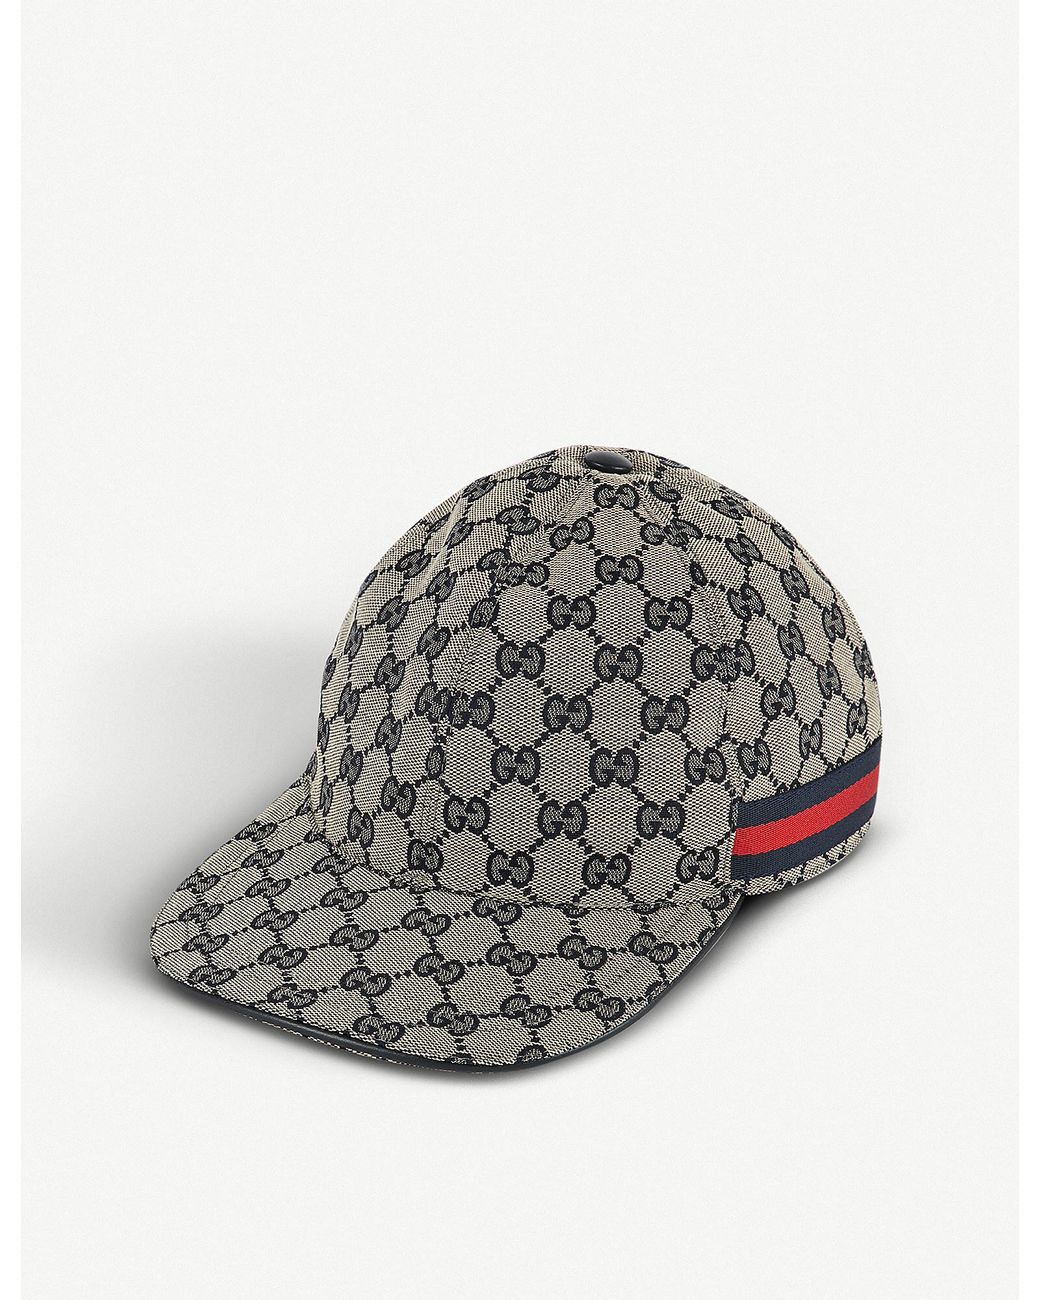 Gucci Men's GG Web Stripe Baseball Hat